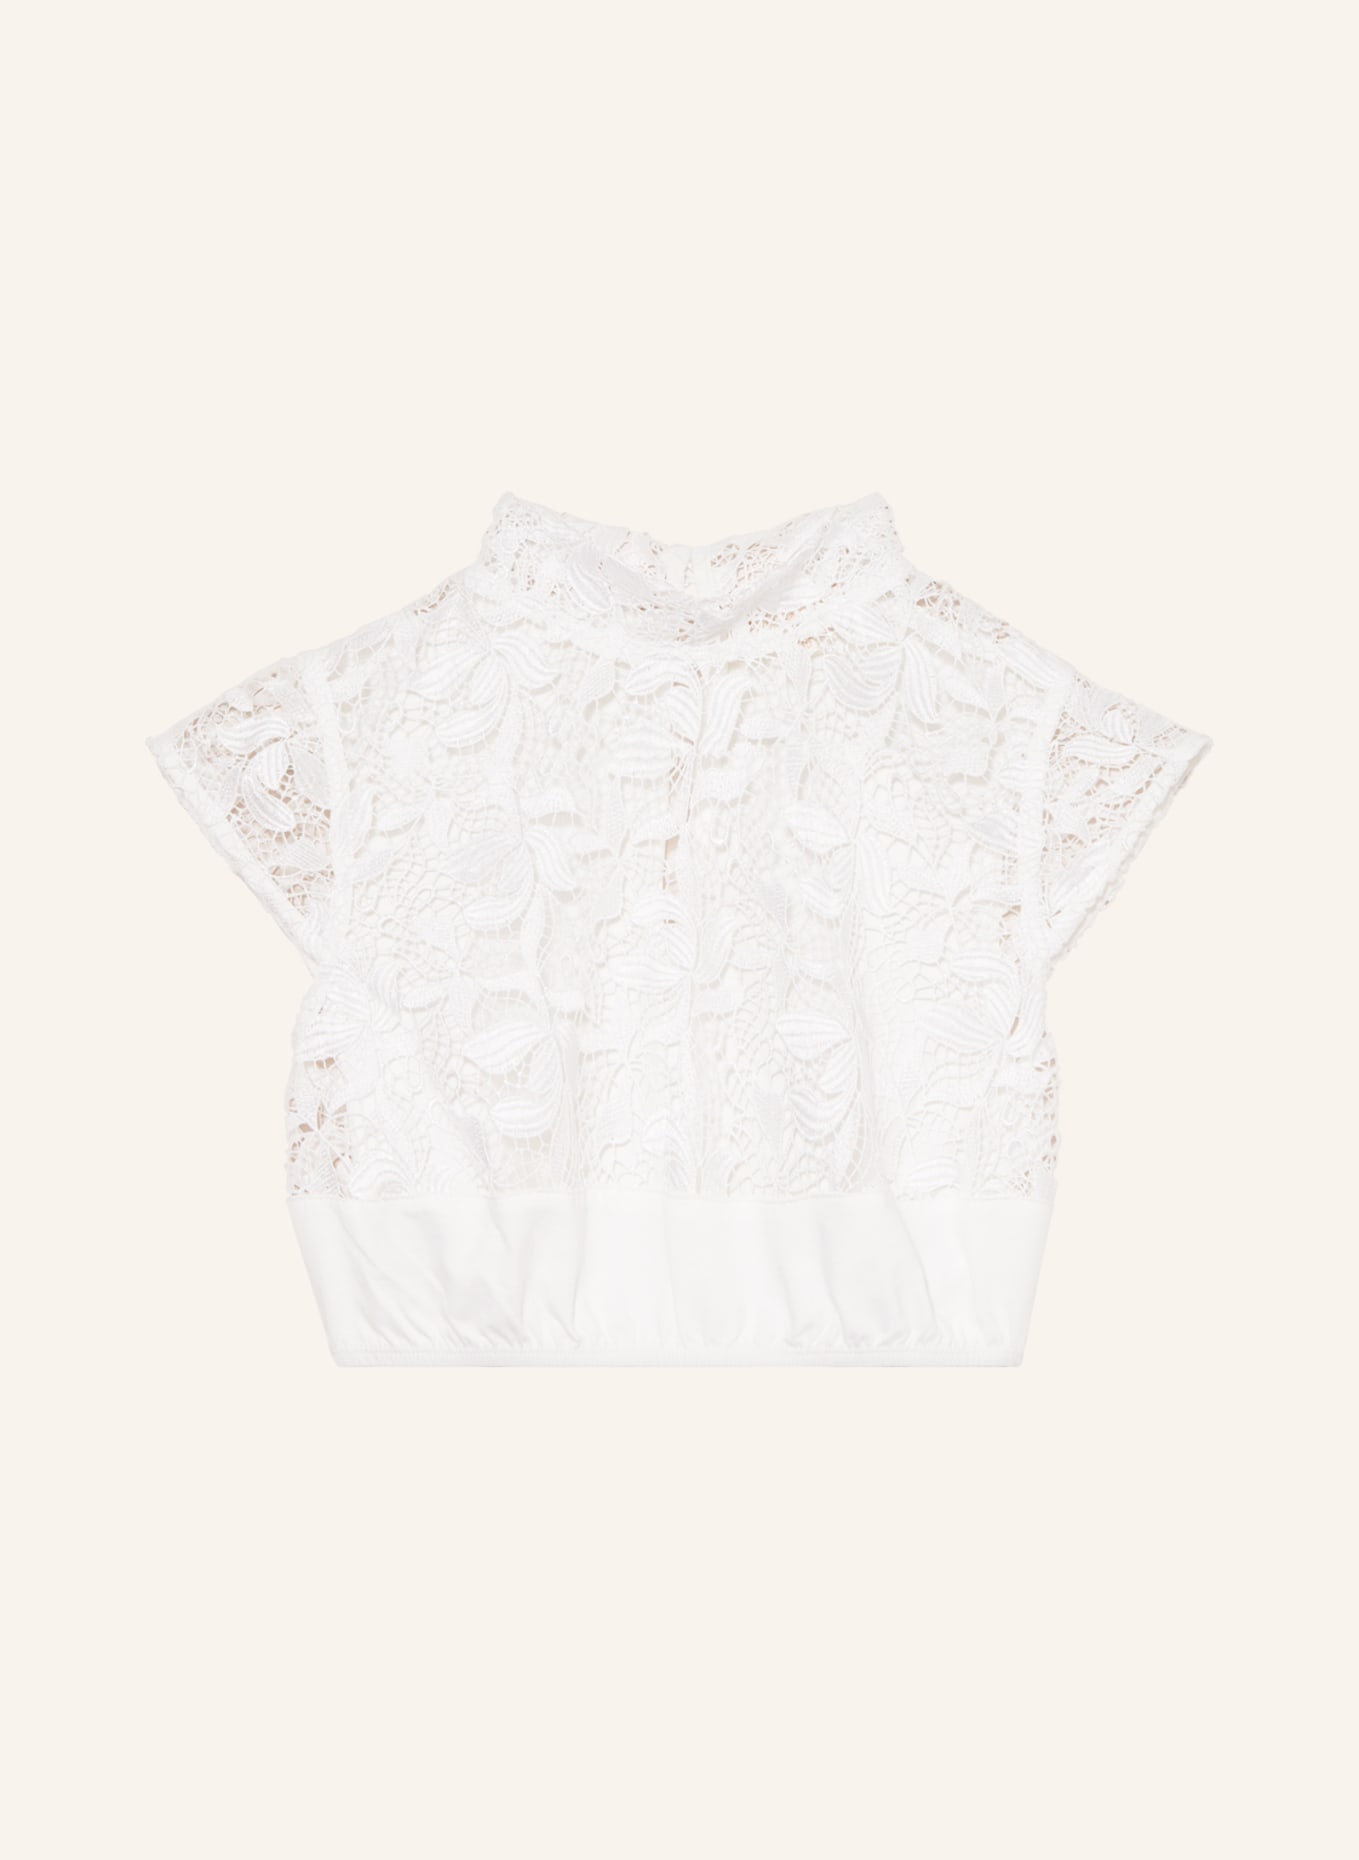 KRÜGER Dirndl blouse, Color: WHITE (Image 1)